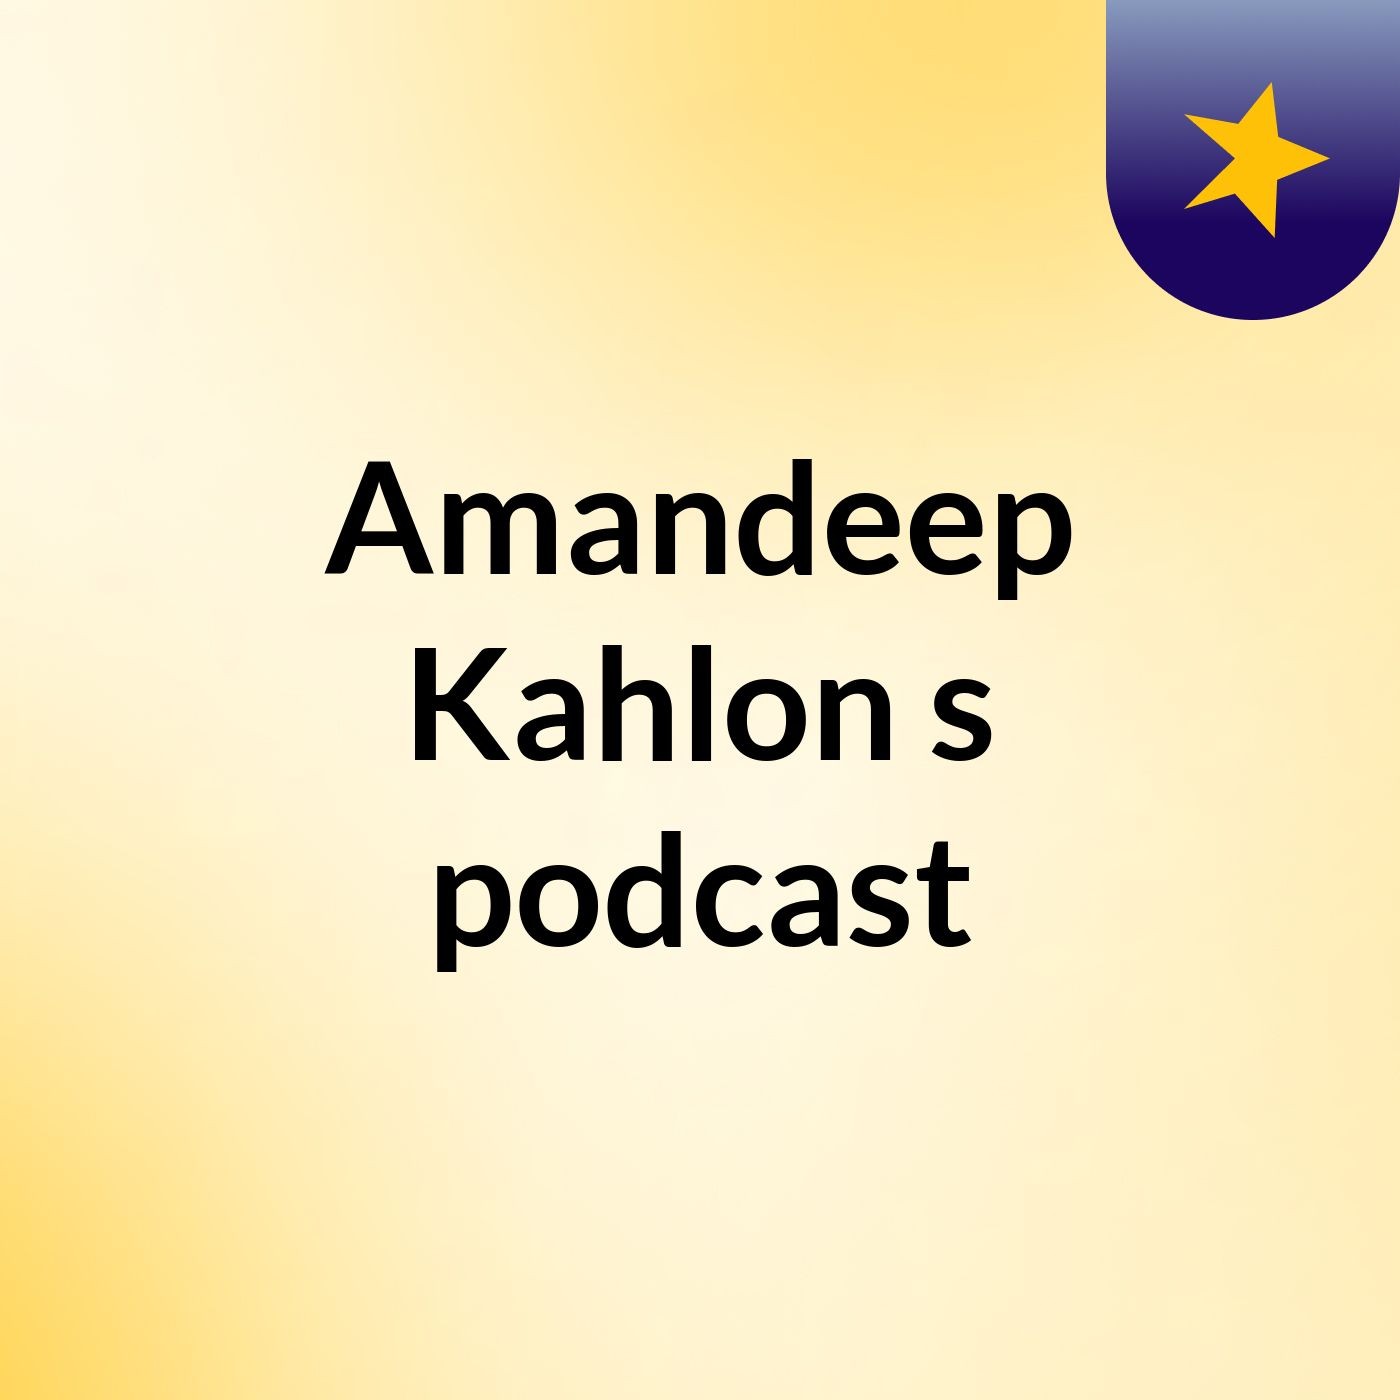 Amandeep Kahlon's podcast